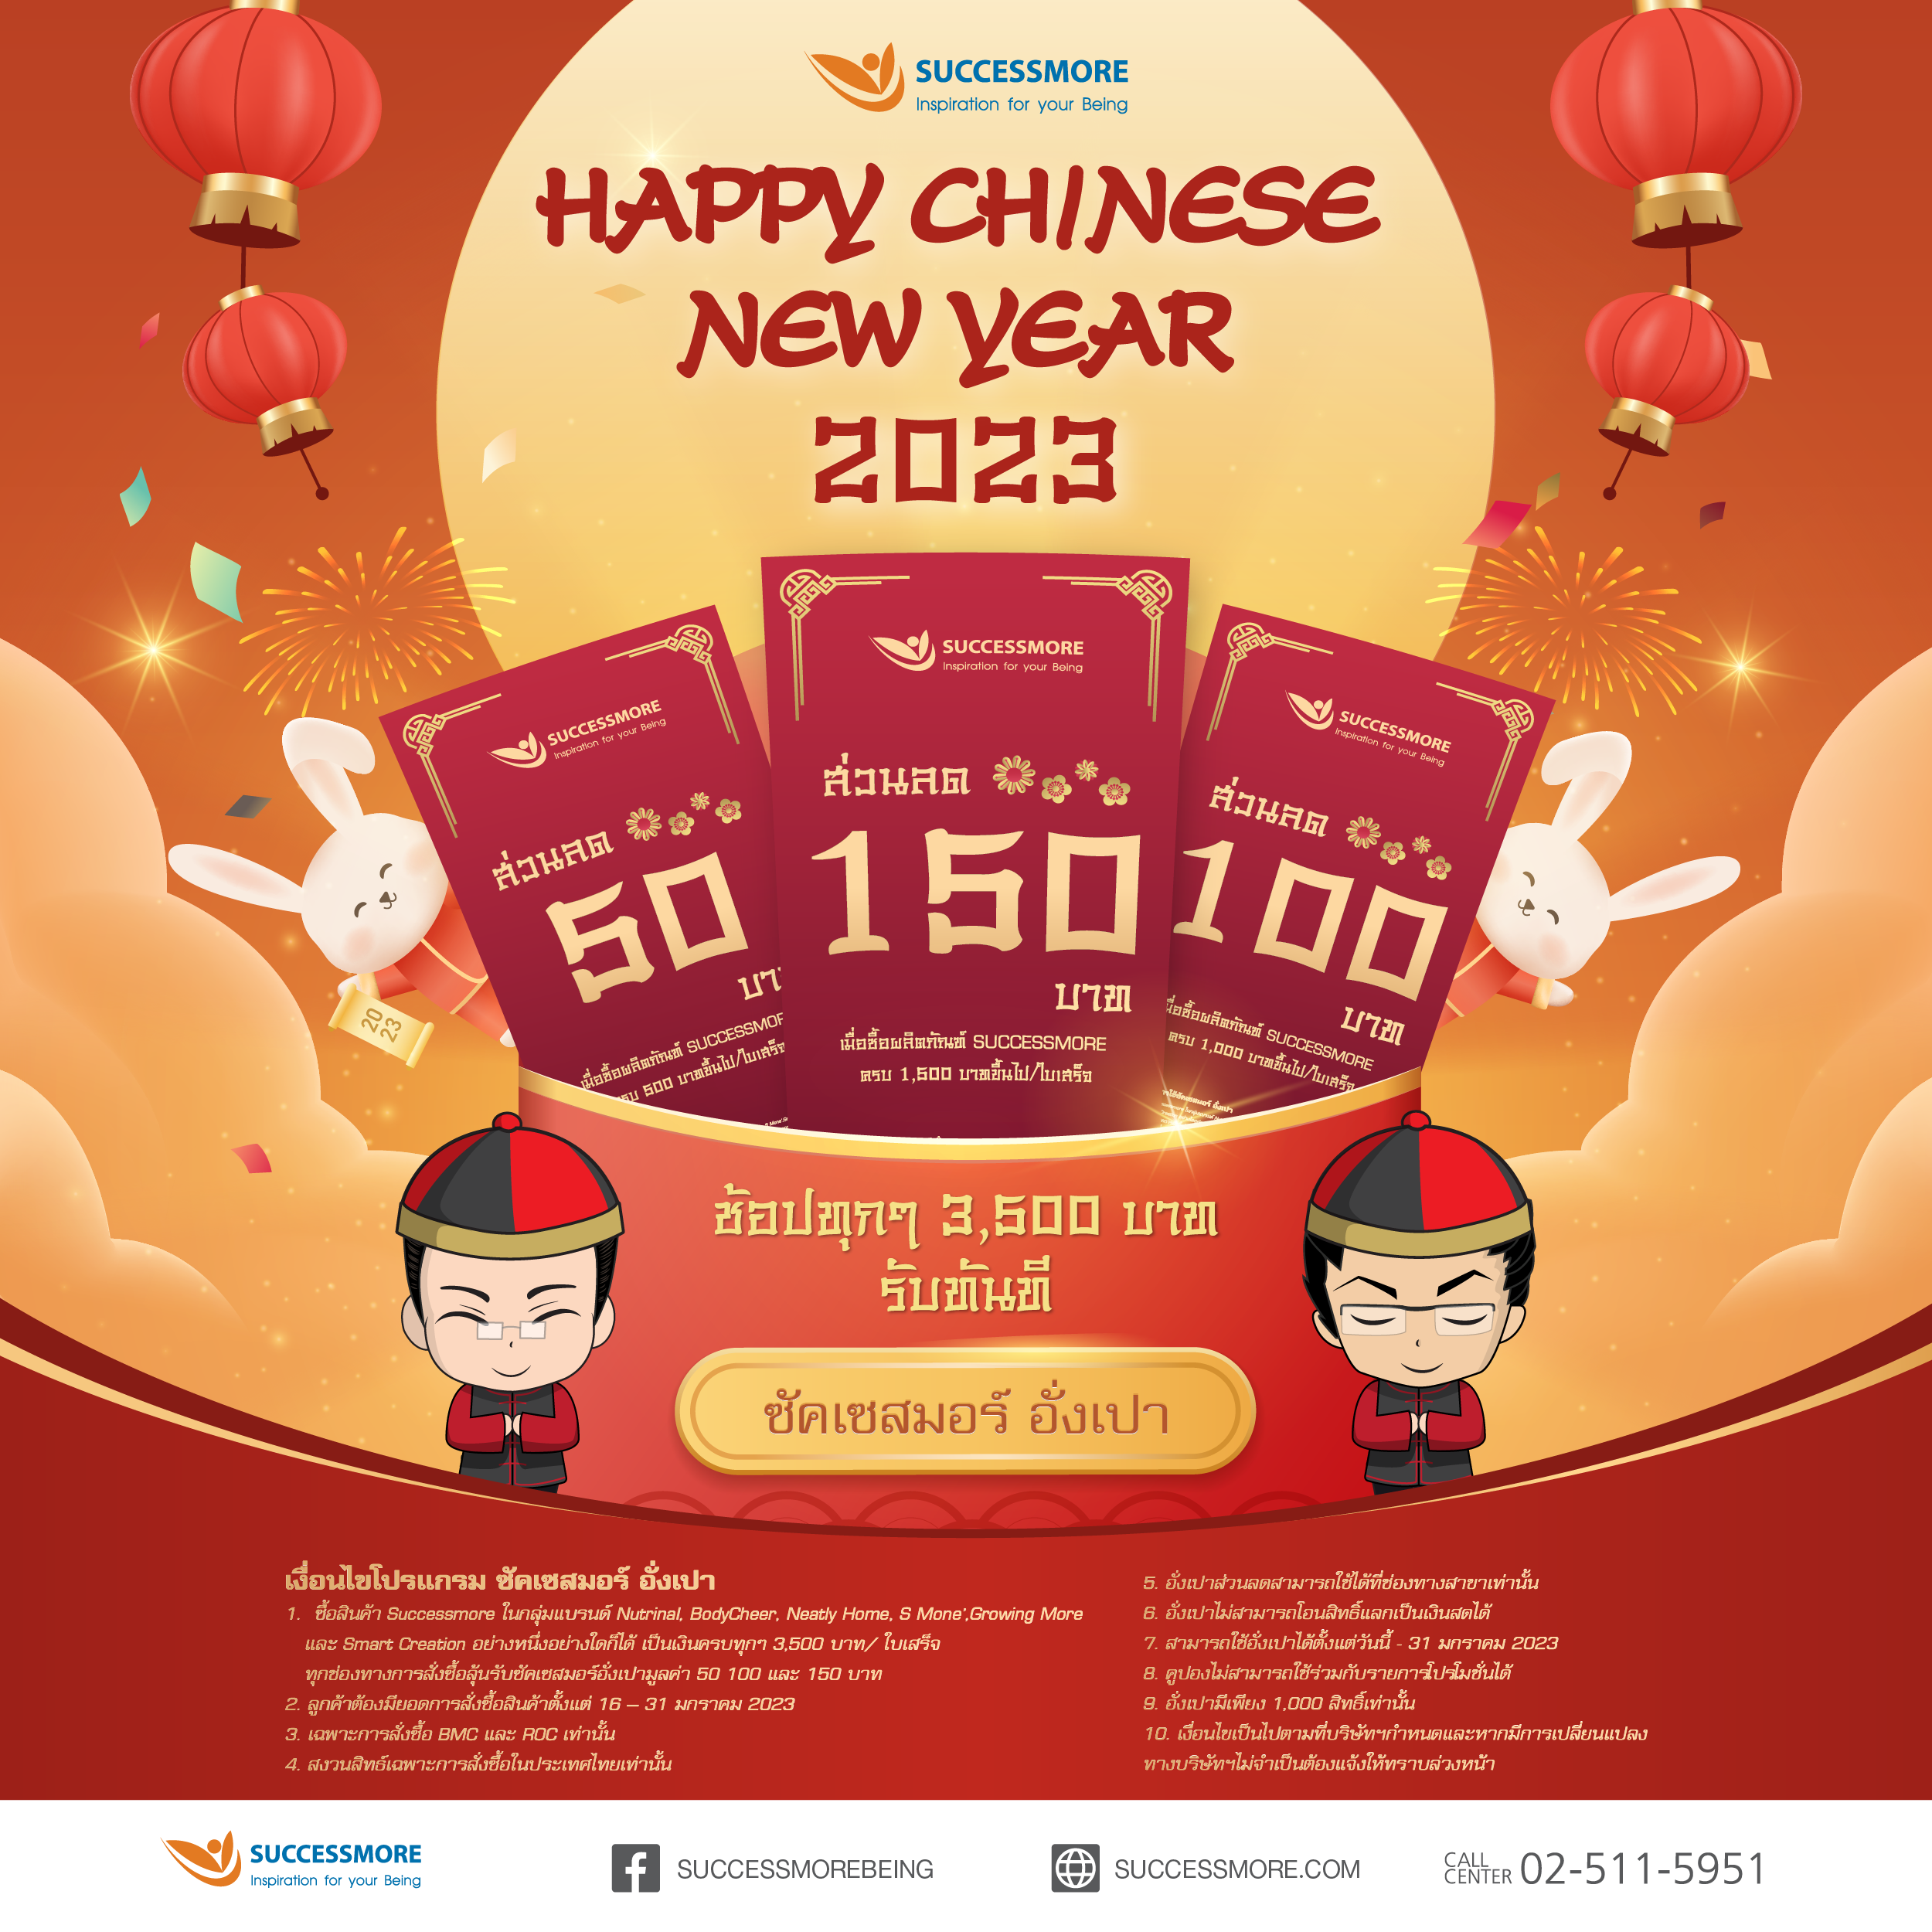 ซัคเซสมอร์ฉลองตรุษจีนมหามงคล ด้วย Happy Chinese New Year                            เฮงรับต้นปีกับอั่งเปาซัคเซสมอร์                                                                                         ช้อปทุกๆ 3,500 บาท ลุ้นรับอั่งเปาทันที!!